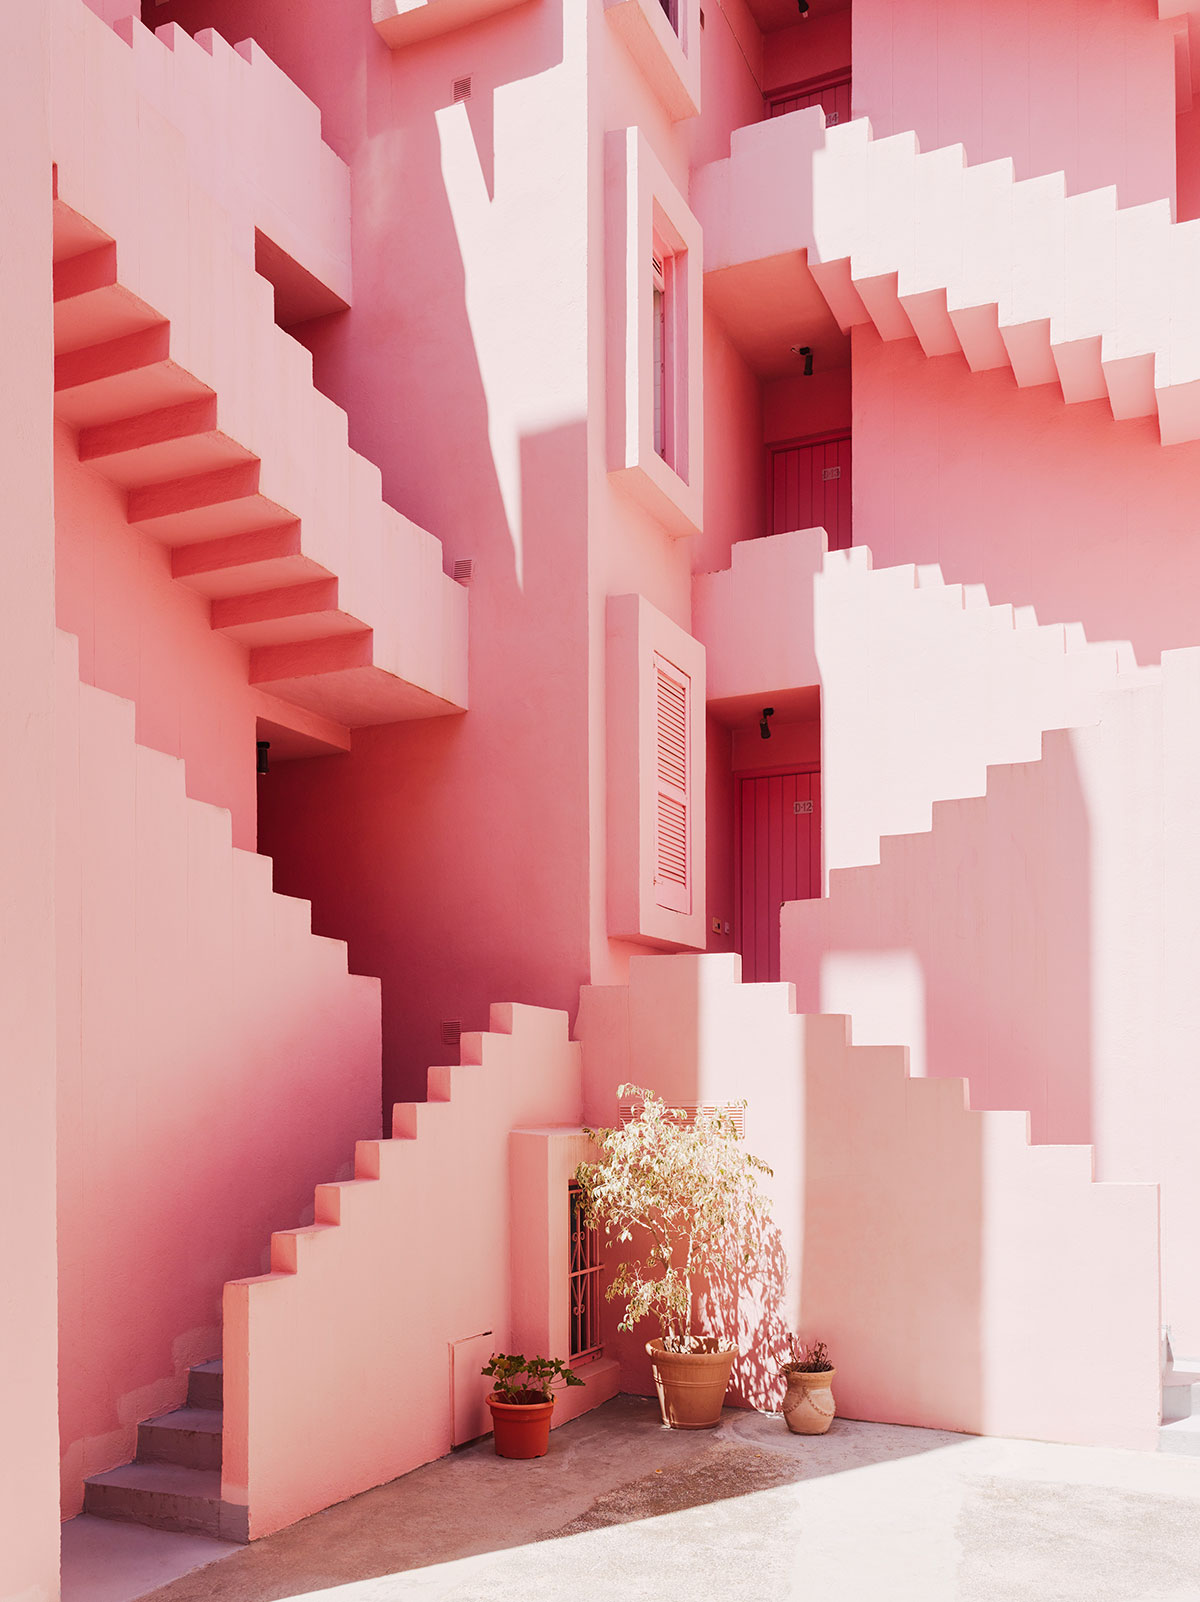 Architecture:  La Muralla Roja